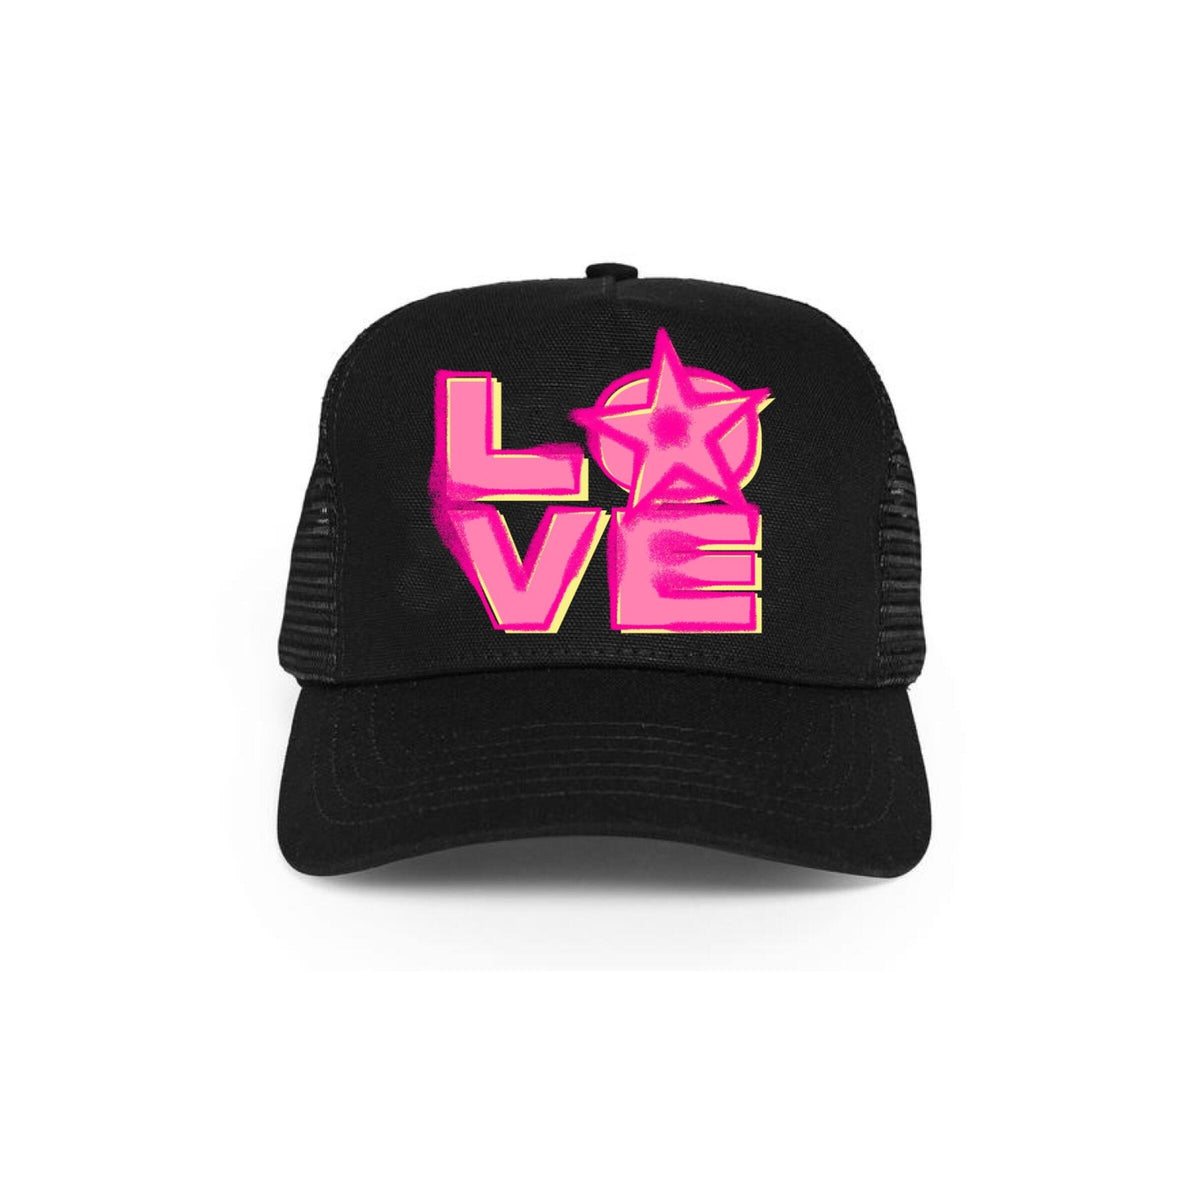 Star Love Snapback Hat by L.O.V.E - FLY GUYZ